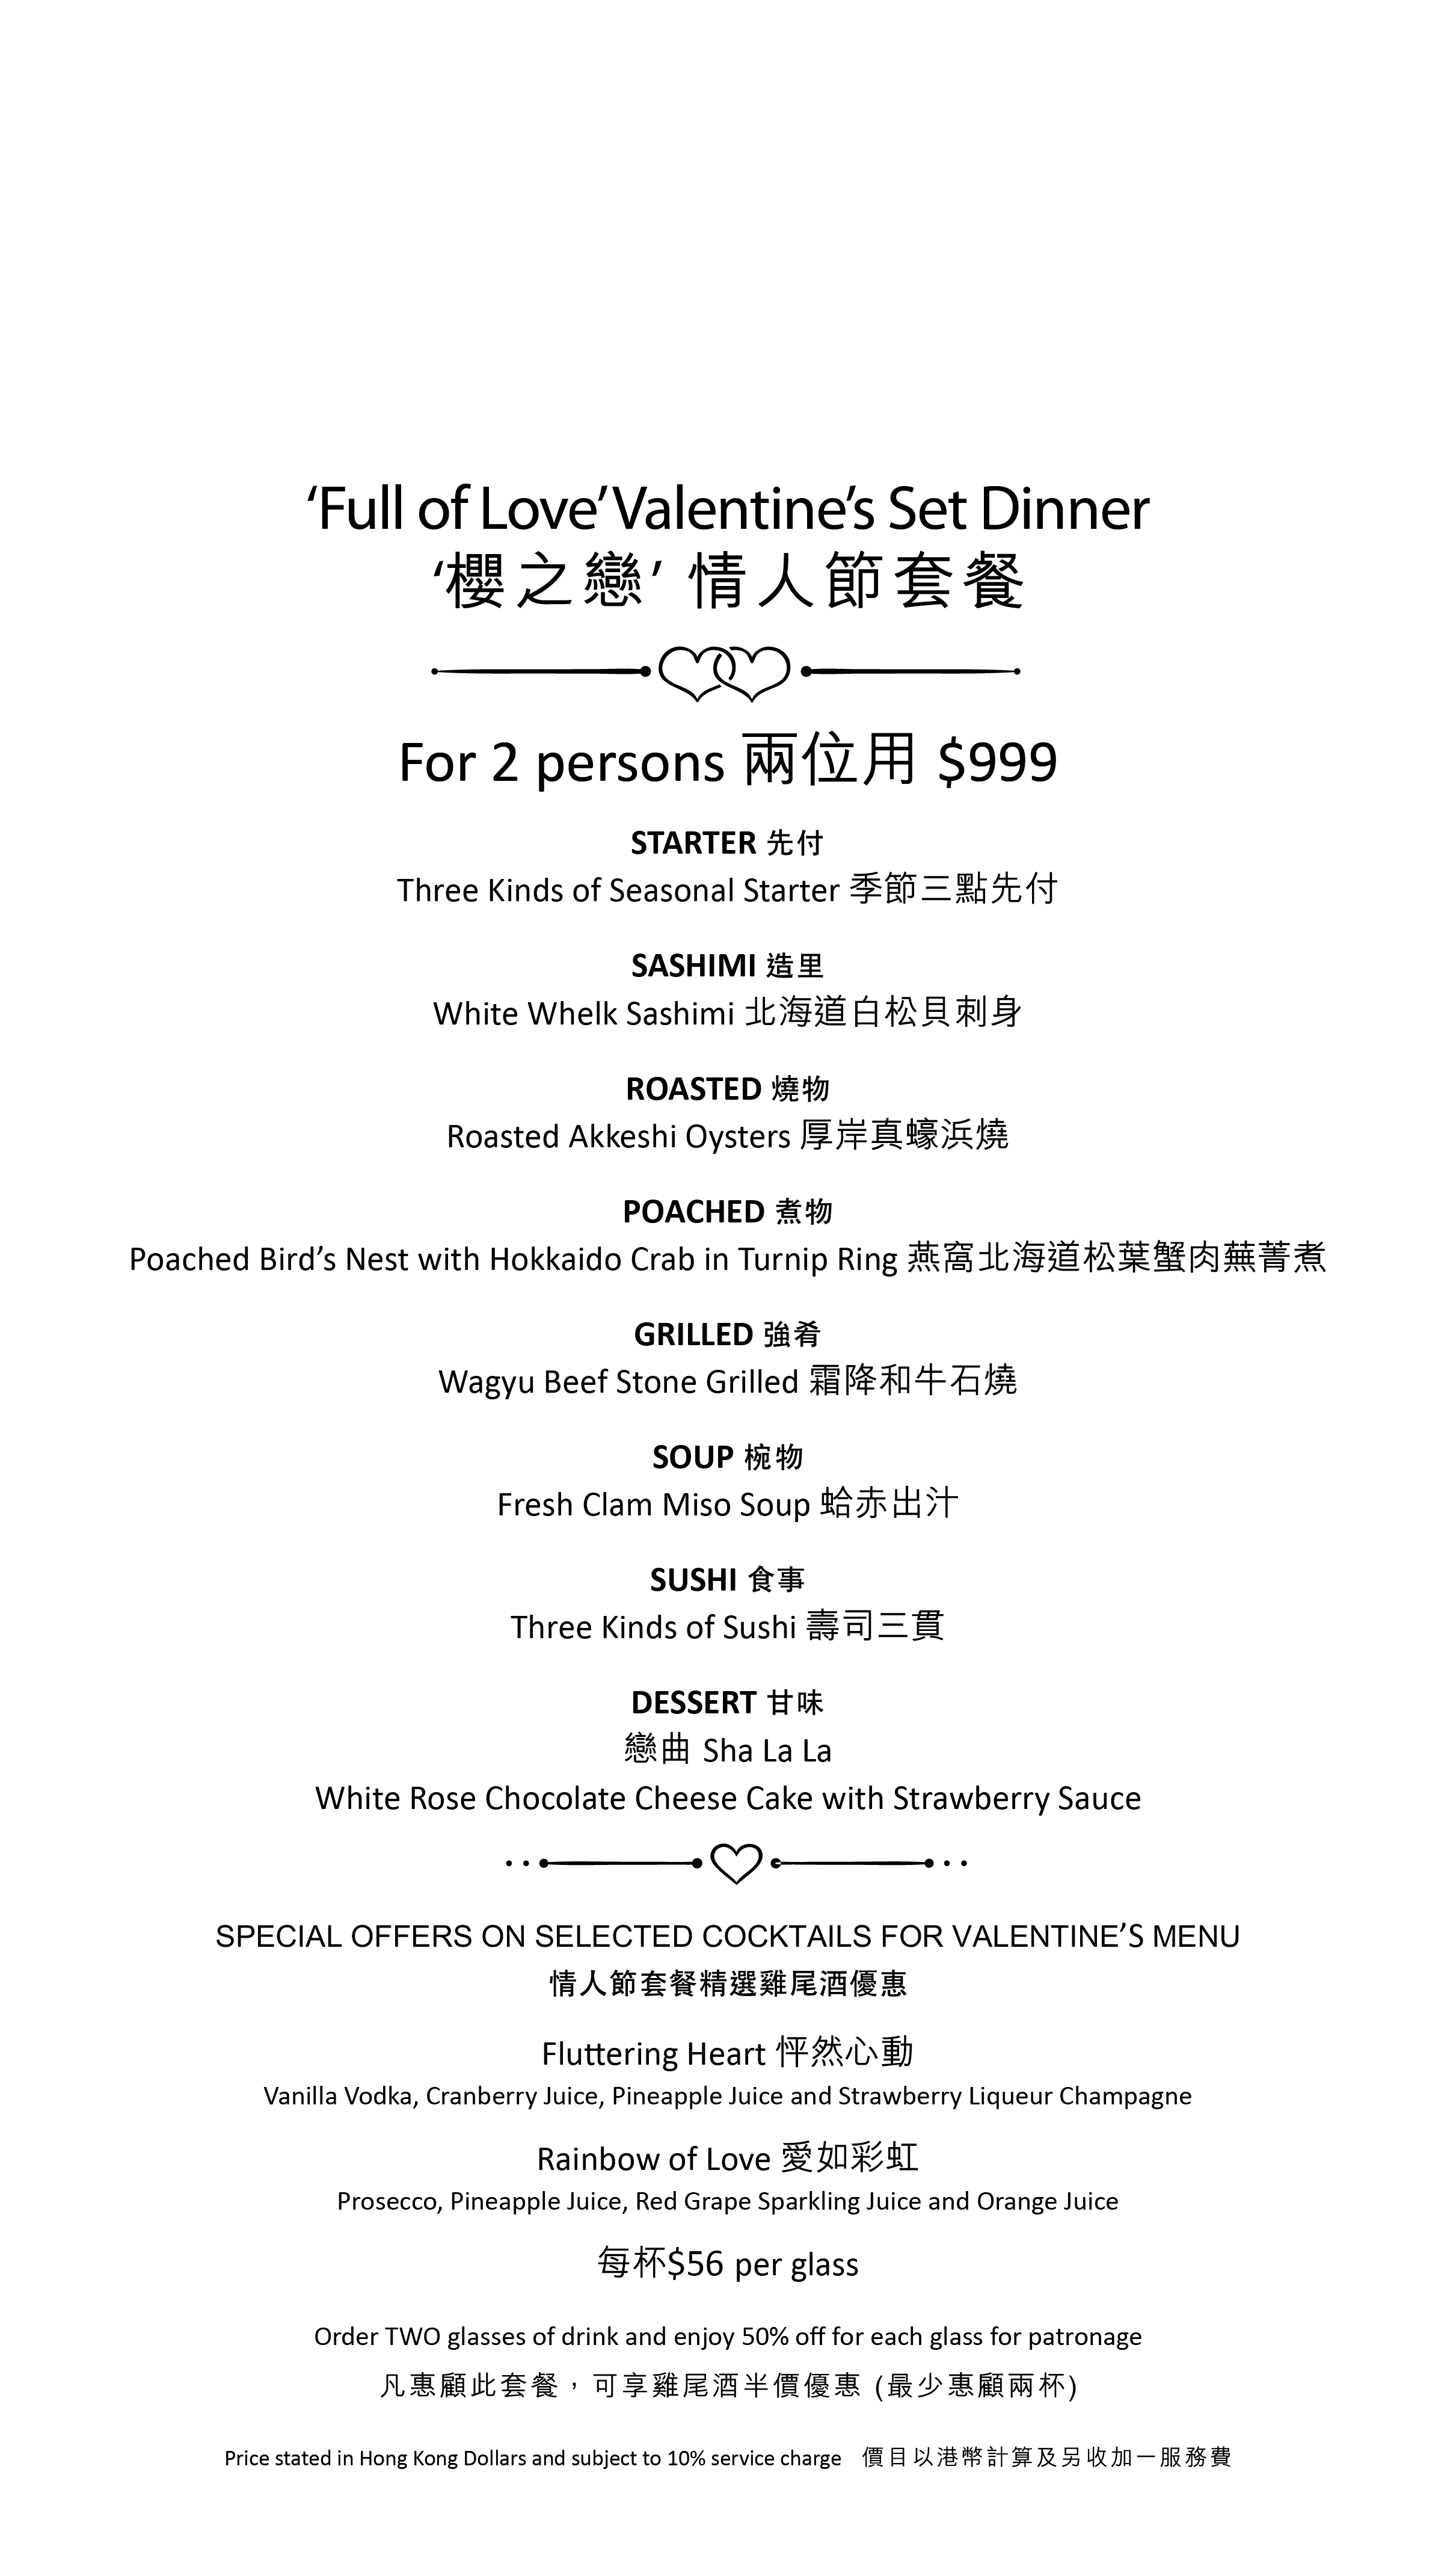 Aji Bou Is full of love櫻之戀 2018 Valentine's menu - OKiBook Hong Kong Restaurant Booking